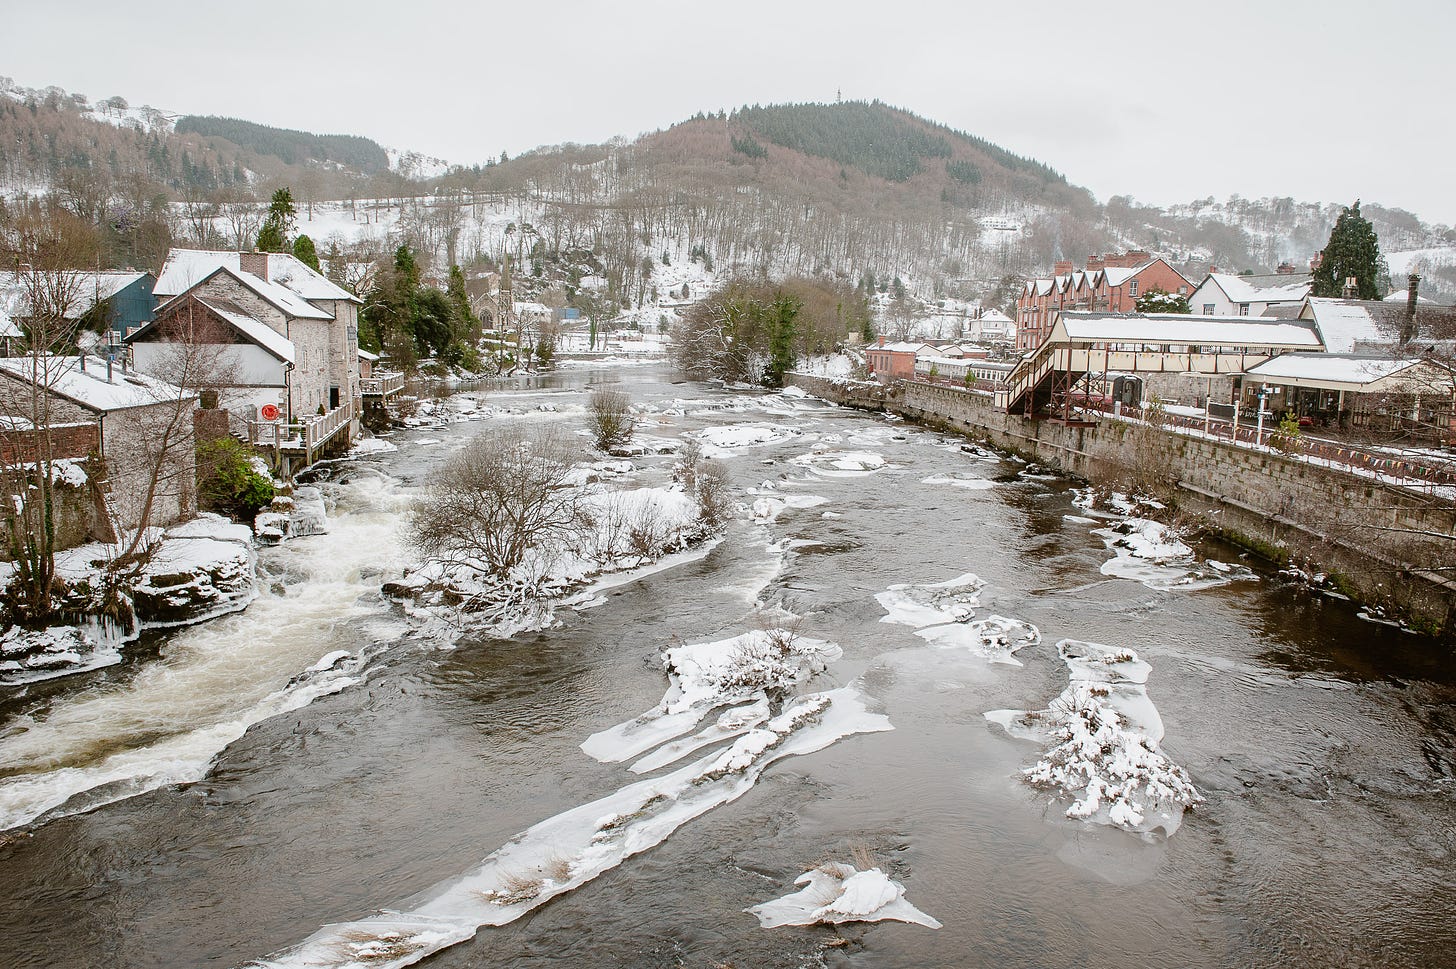 A river runs through a snowy Welsh town.